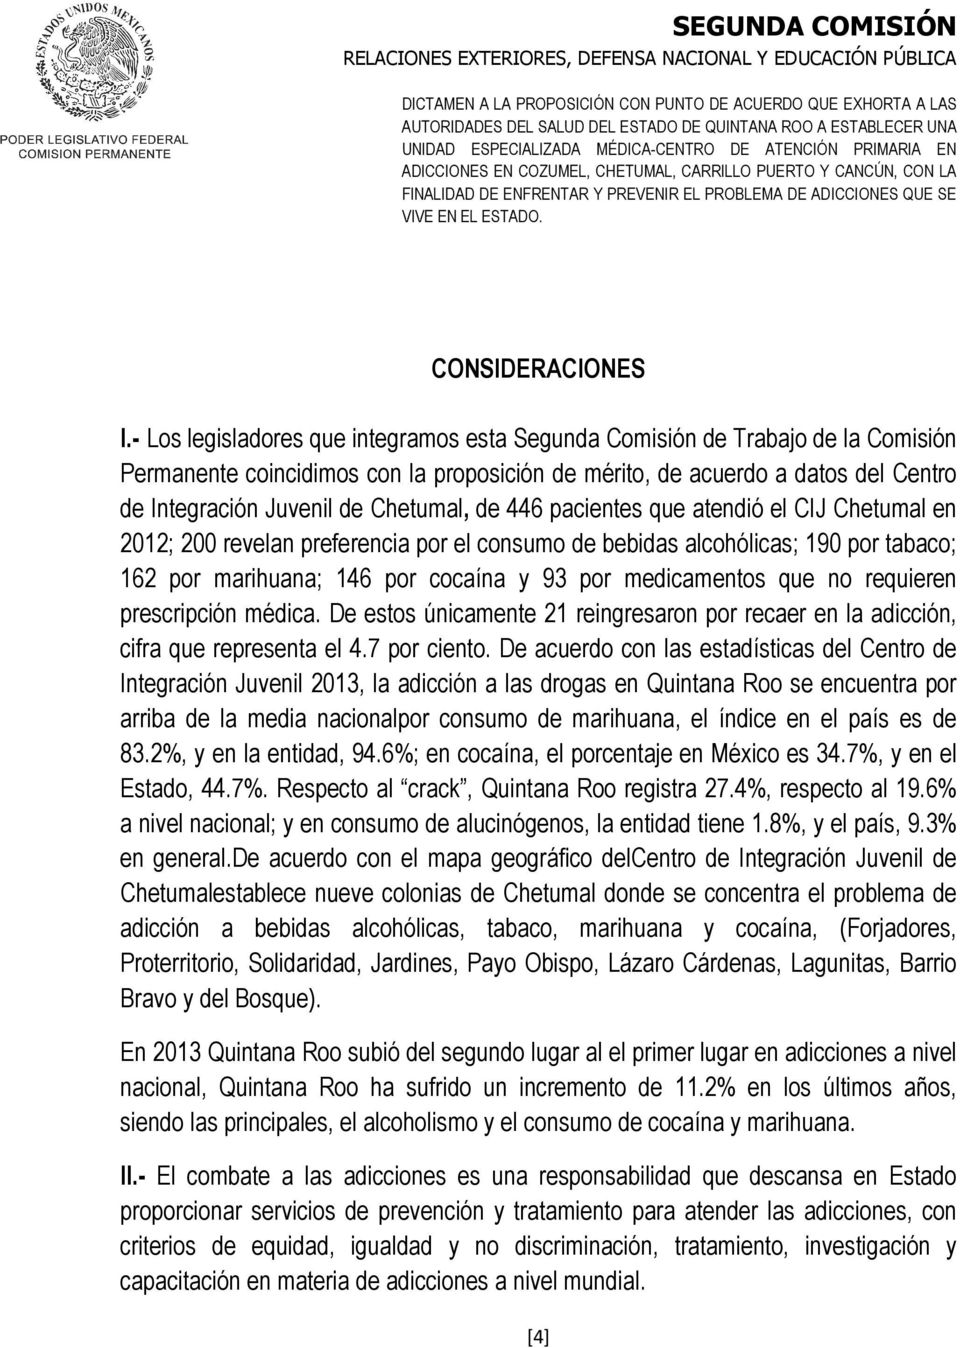 Chetumal, de 446 pacientes que atendió el CIJ Chetumal en 2012; 200 revelan preferencia por el consumo de bebidas alcohólicas; 190 por tabaco; 162 por marihuana; 146 por cocaína y 93 por medicamentos